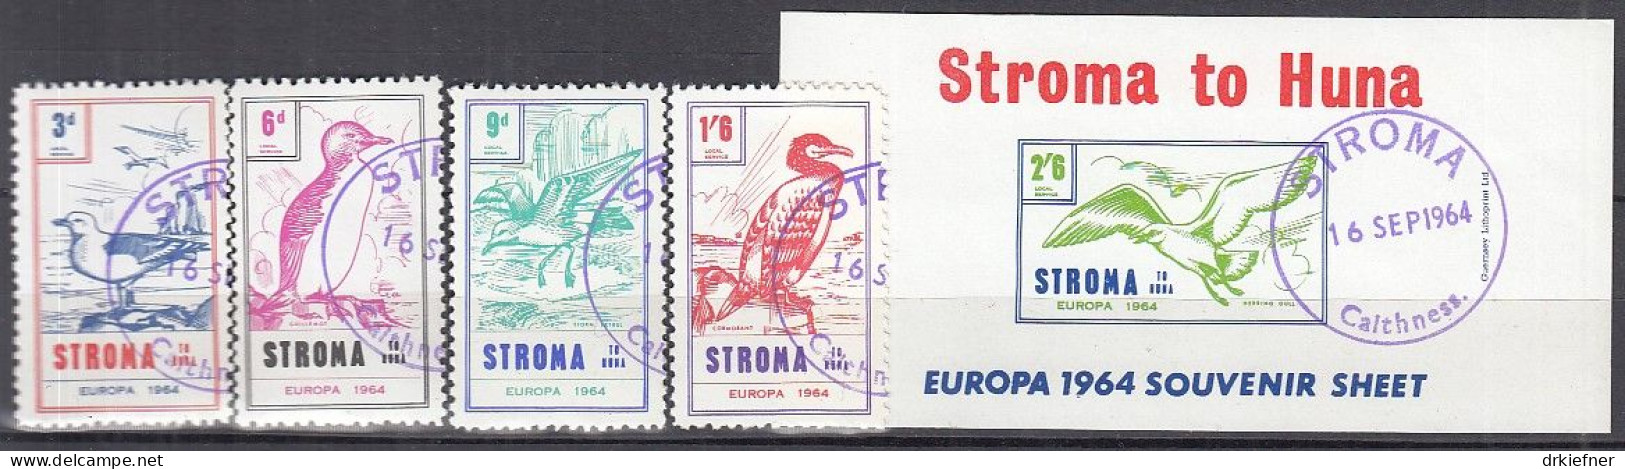 INSEL STROMA (Schottland), Nichtamtl. Briefmarken, Stroma To Huna, Block + 4 Marken, Gestempelt, Europa 1964, Vögel - Ecosse